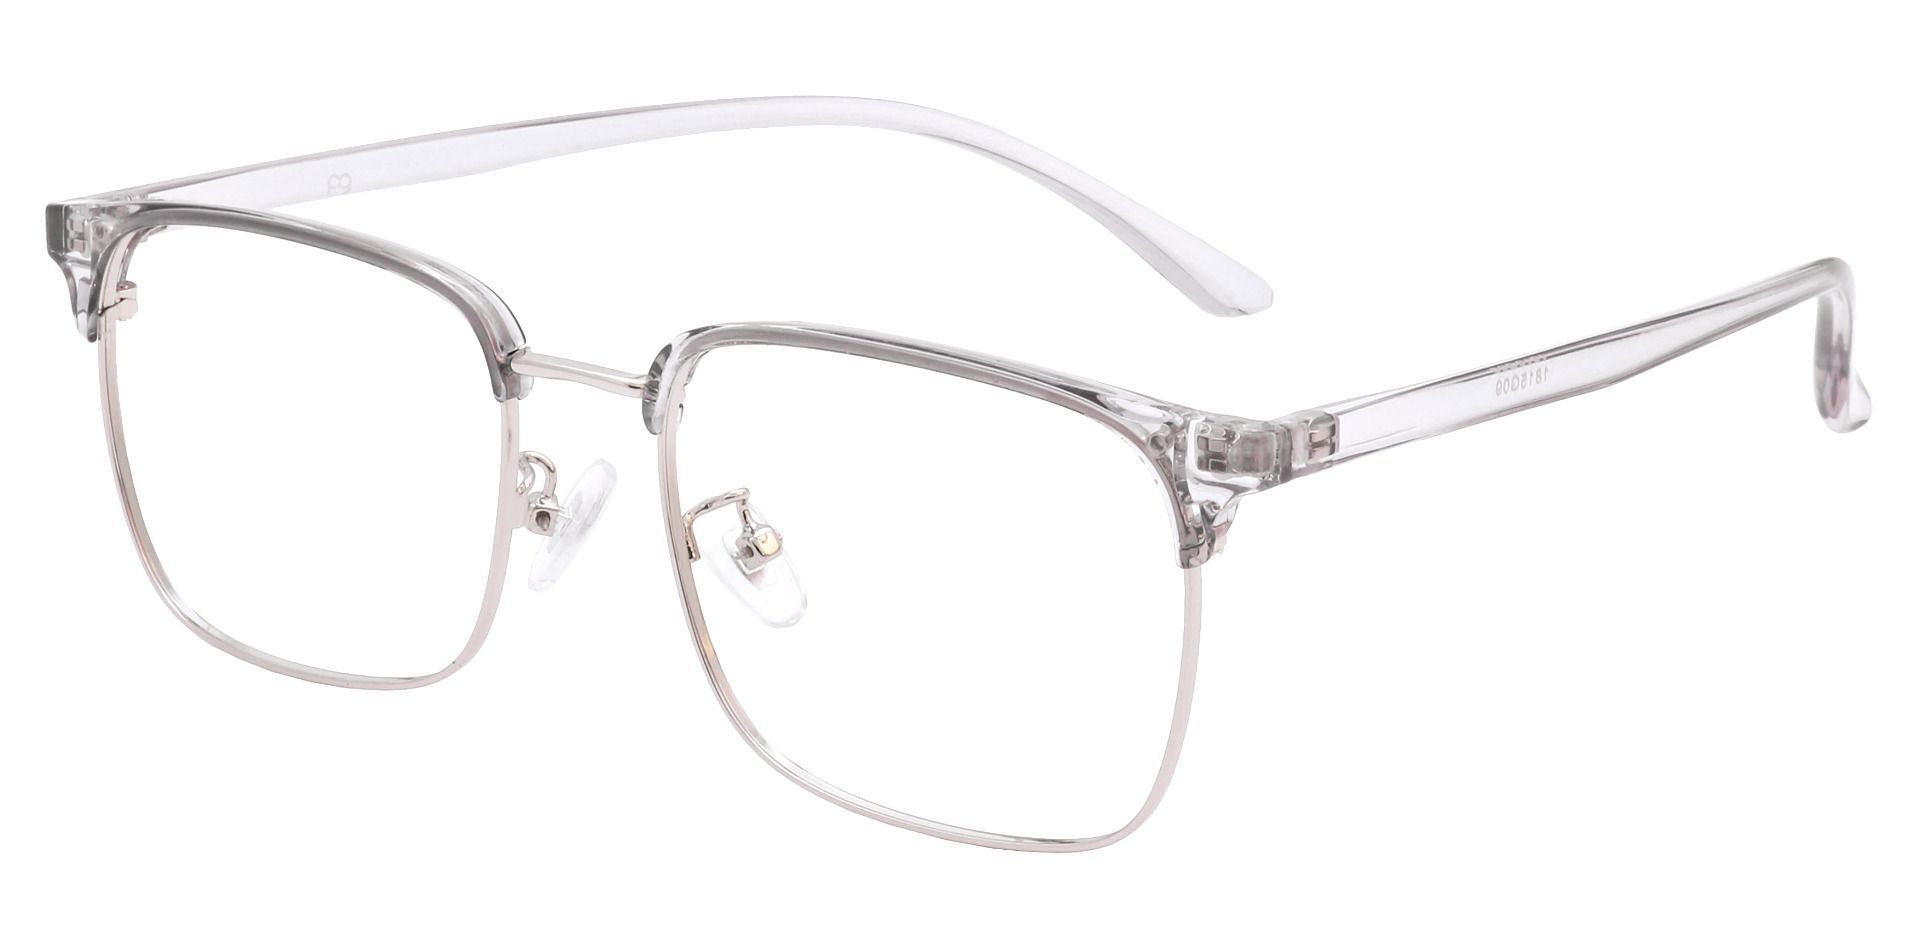 Piper Browline Prescription Glasses - Gray